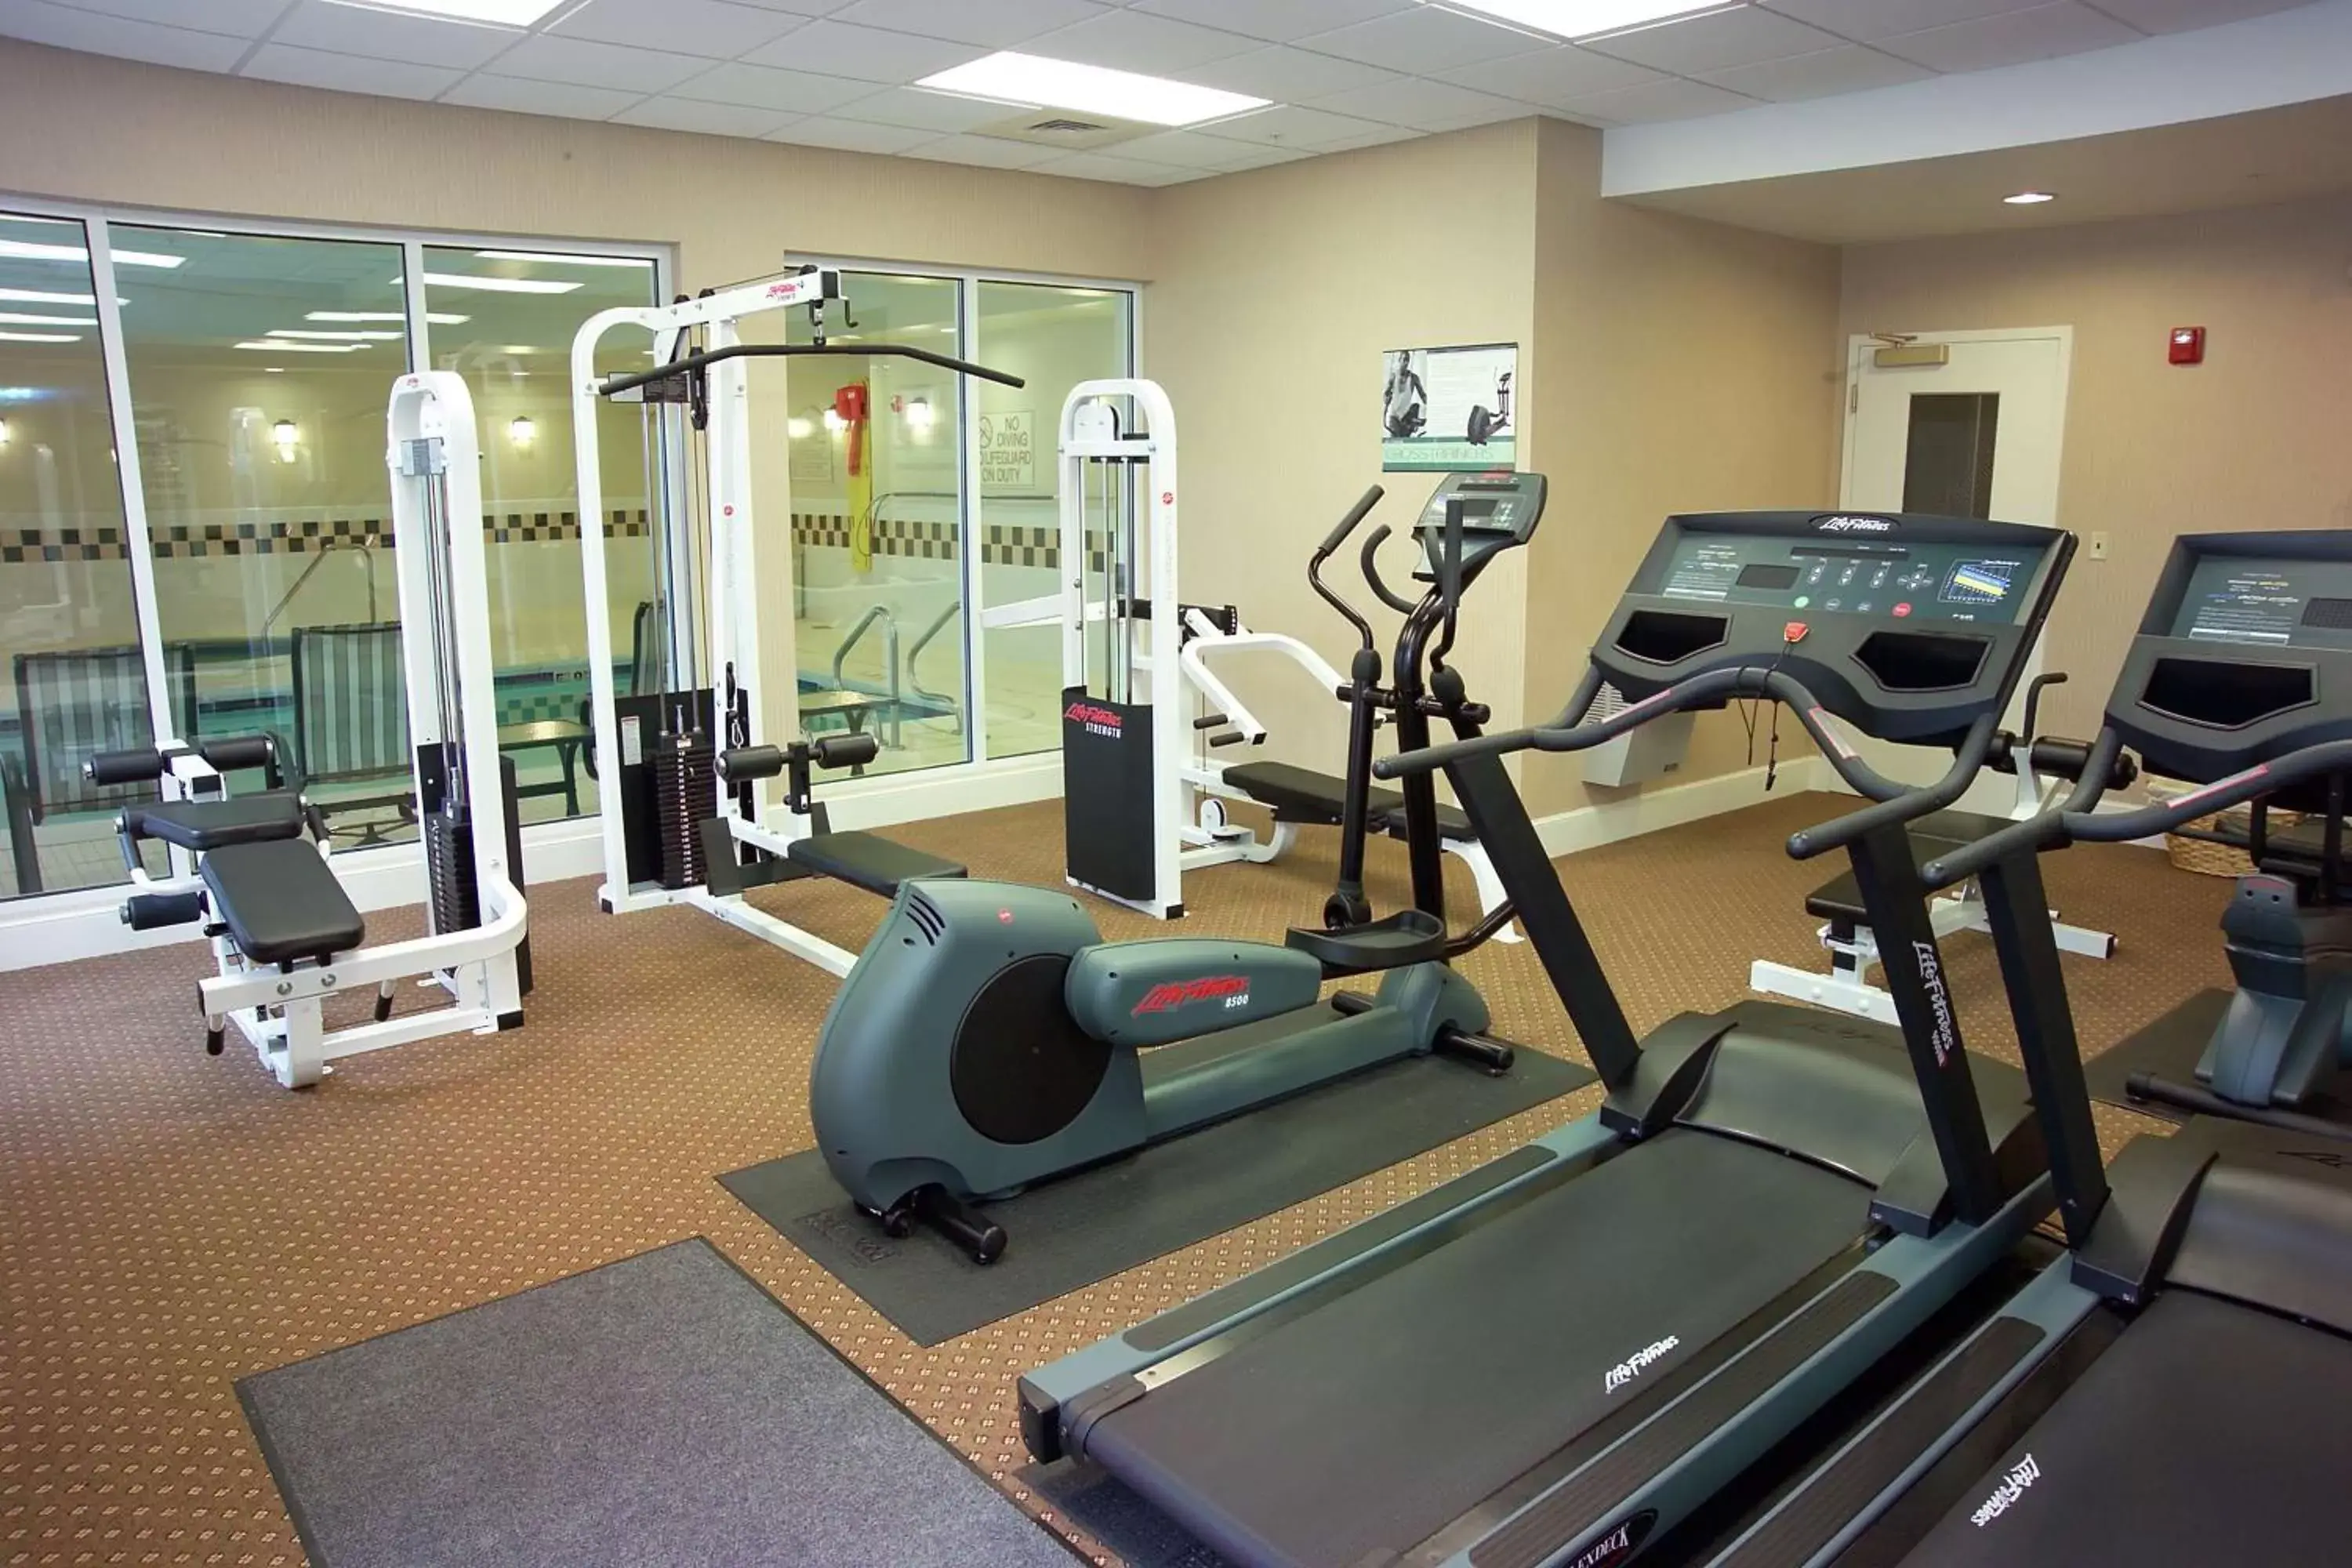 Fitness centre/facilities, Fitness Center/Facilities in Hilton Garden Inn St. Louis/O'Fallon